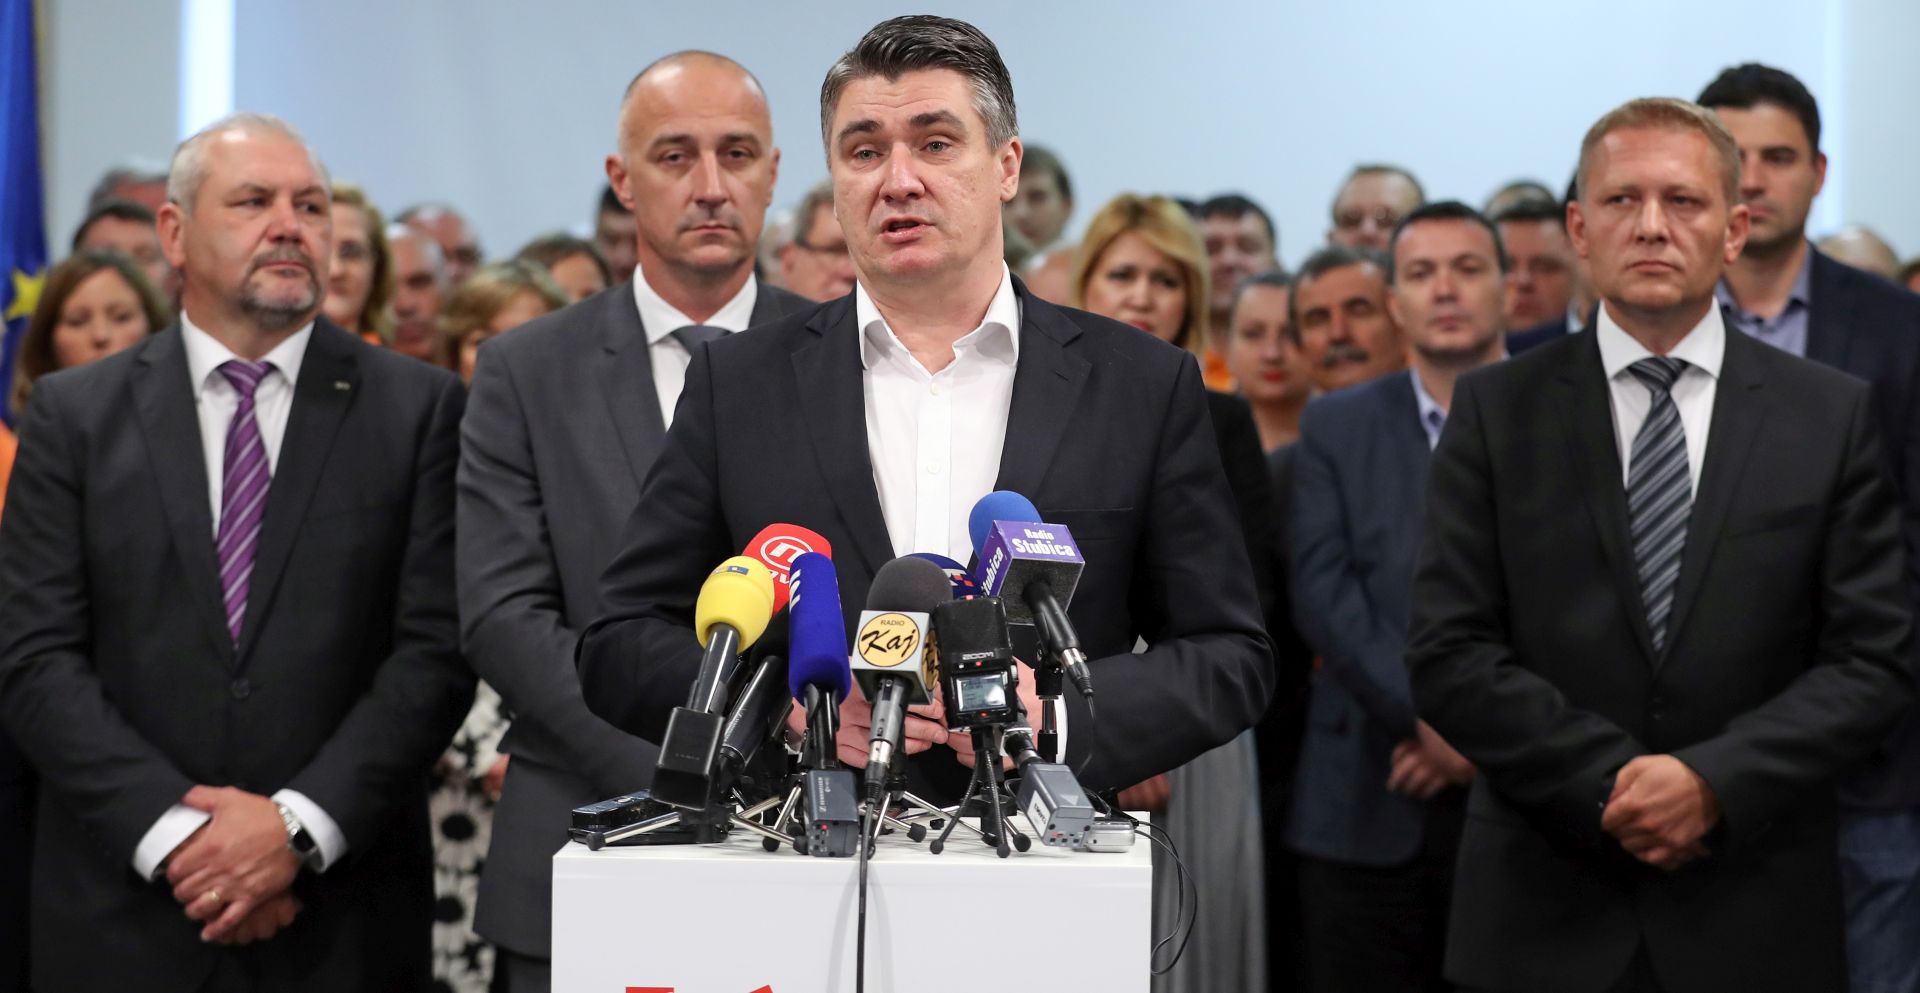 TELEVIZIJSKO SUČELJAVANJE: Milanović pristao na debatu prije tjedan dana, iz HDZ-a se još čeka odgovor